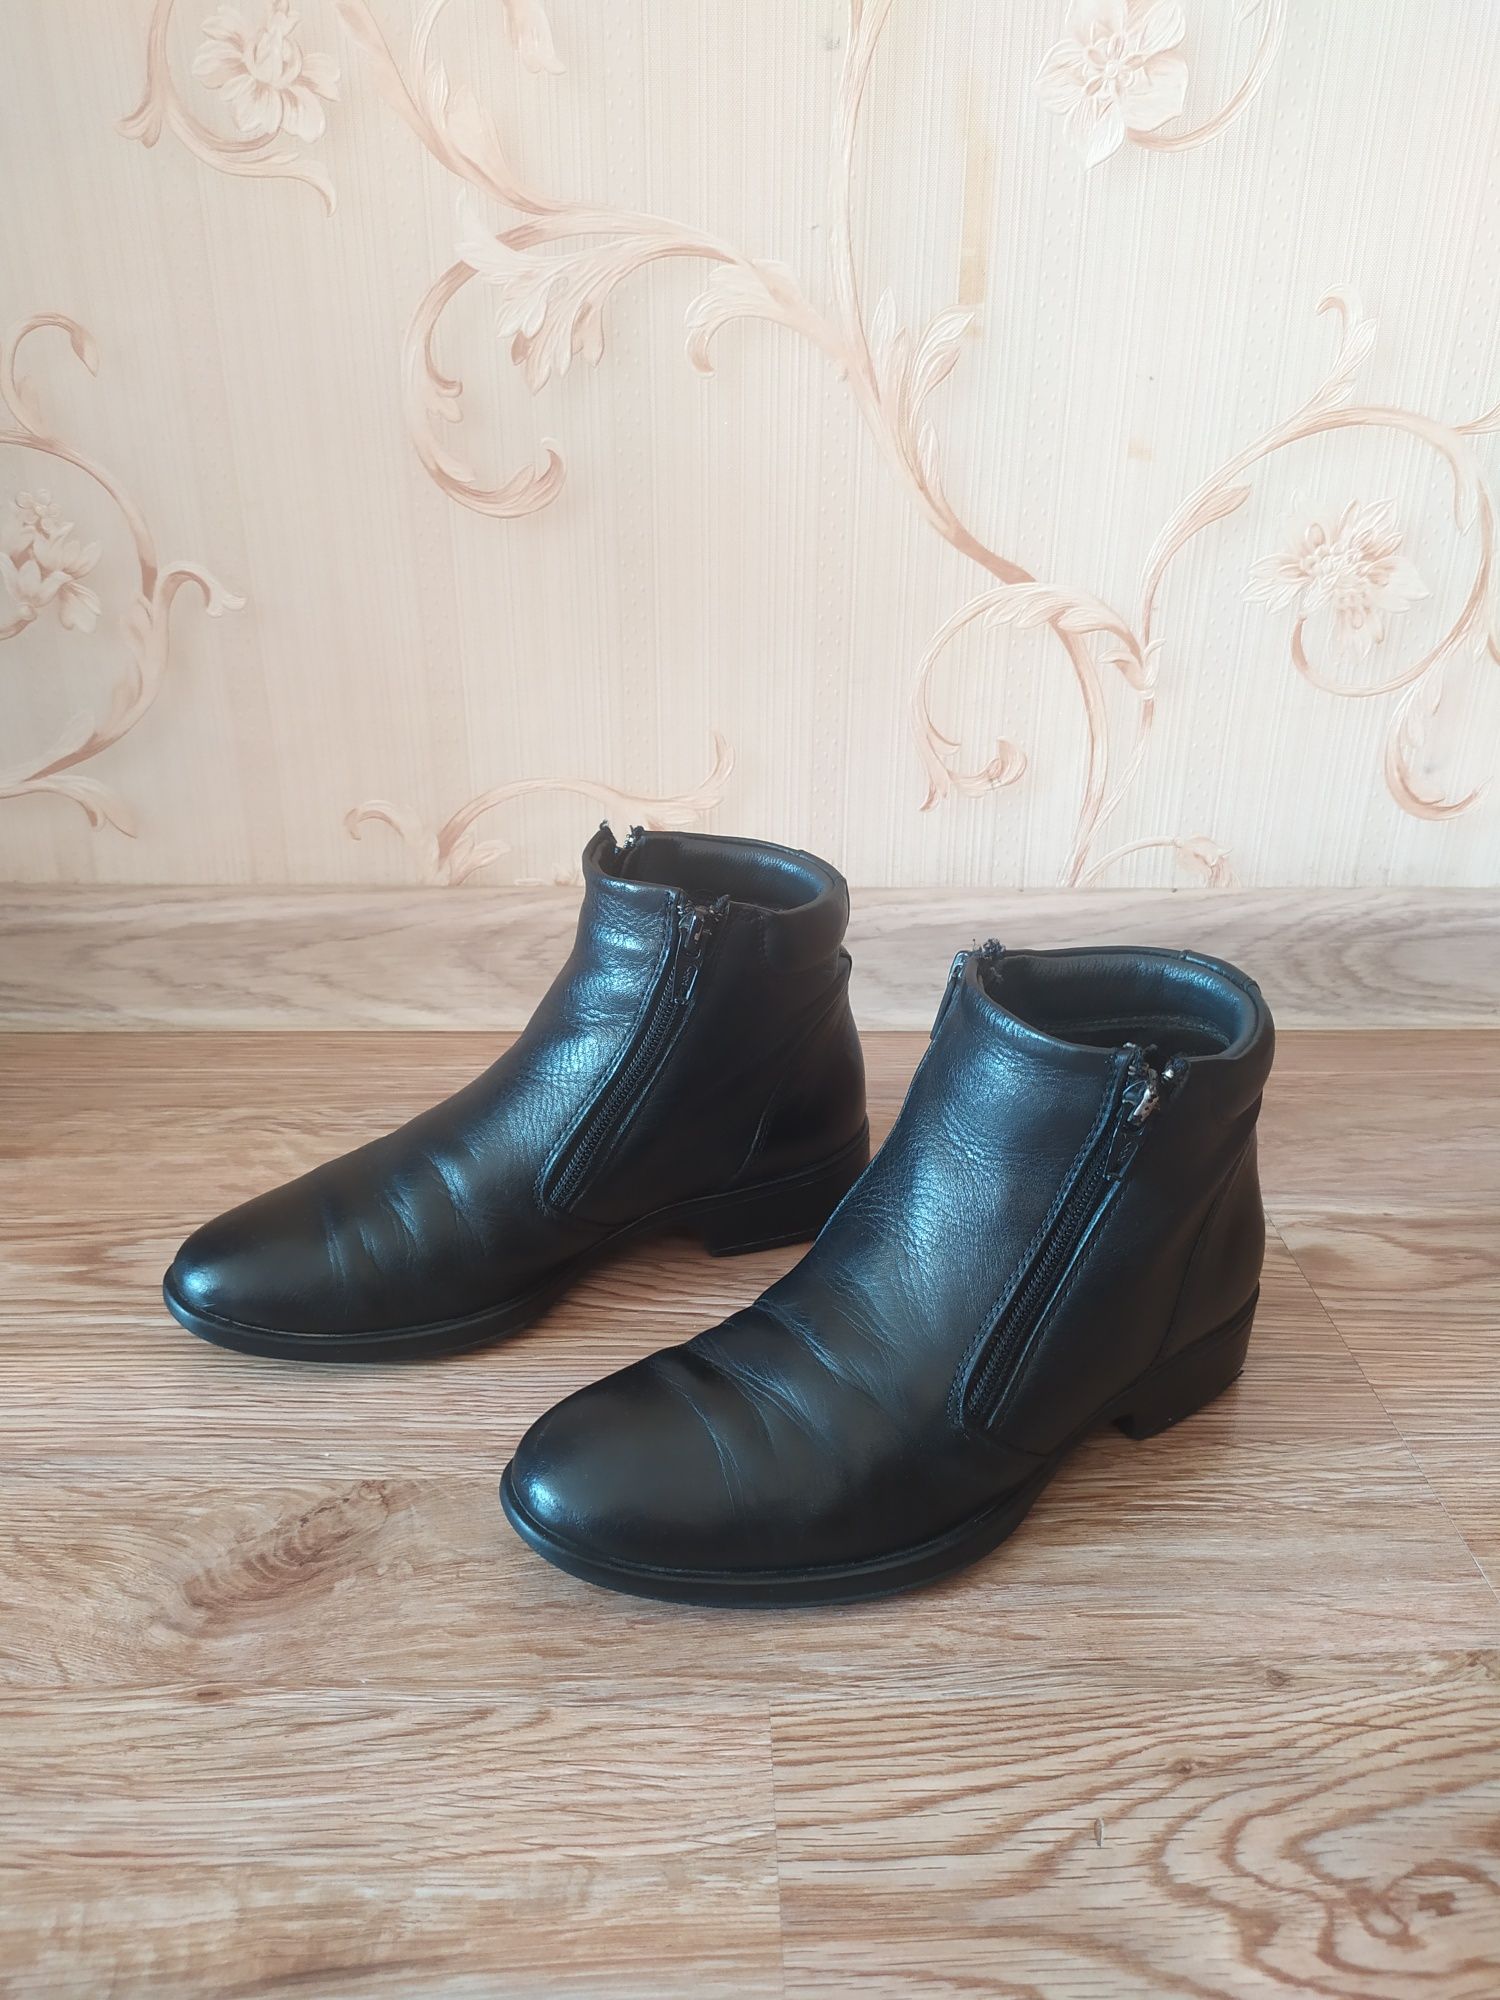 Ботинки для мальчика Tiflani, черный цвет